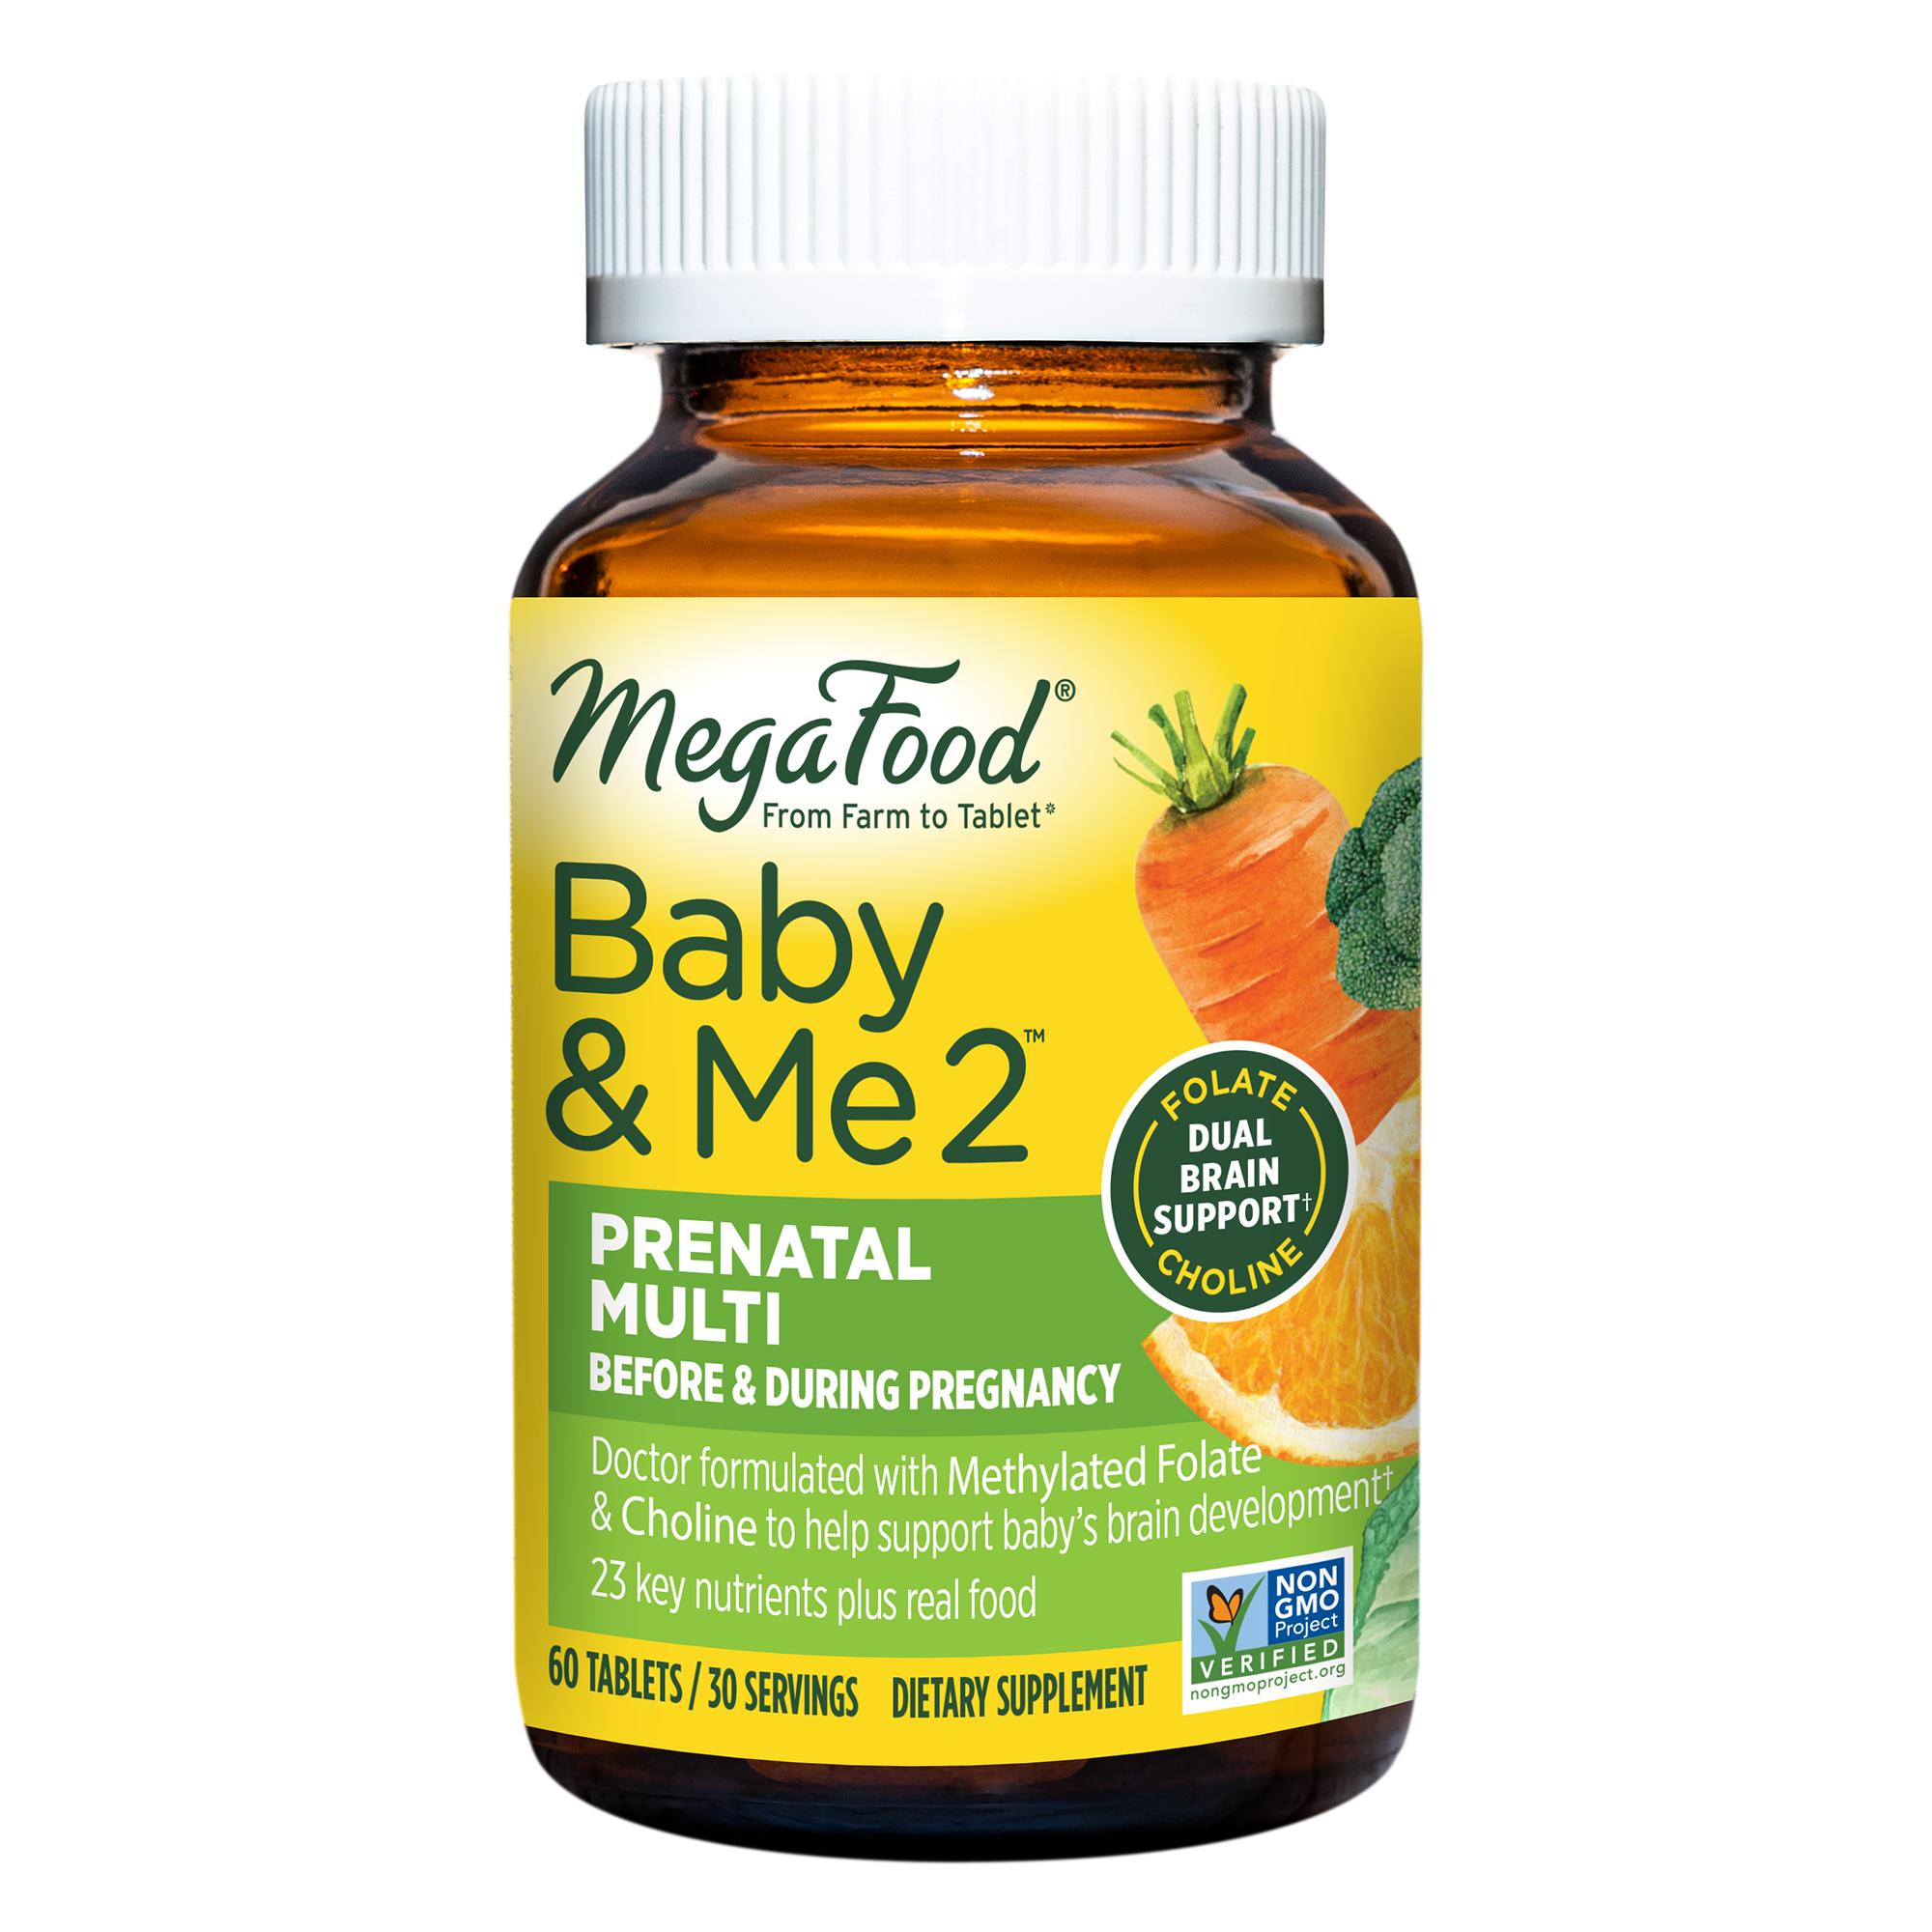 Buy MegaFood Baby & Me 2 at